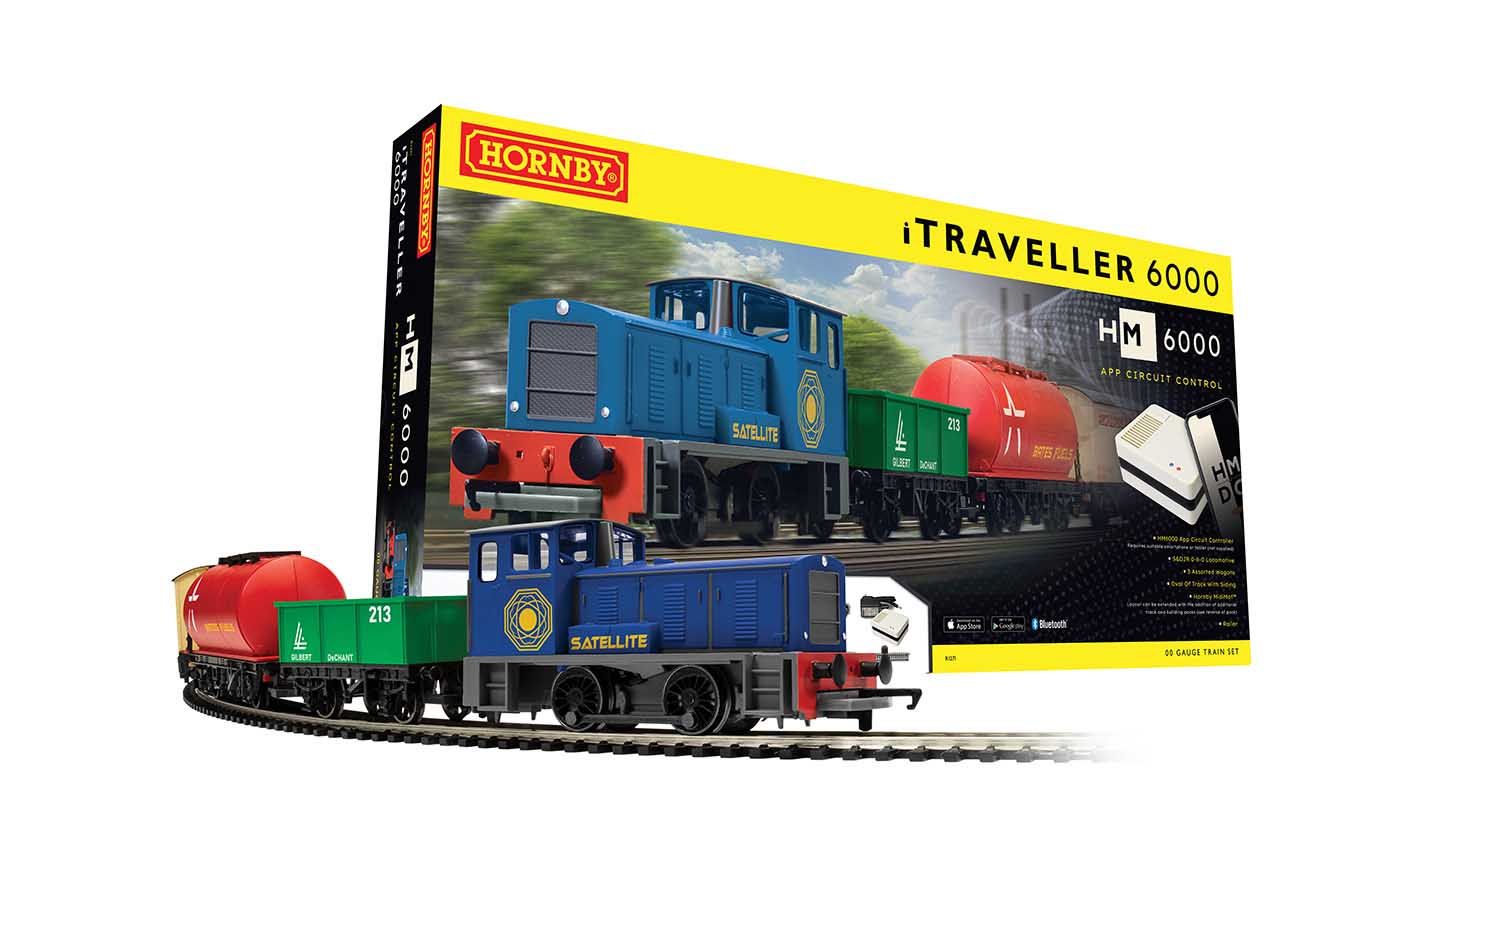  iTraveller 6000 Train Set